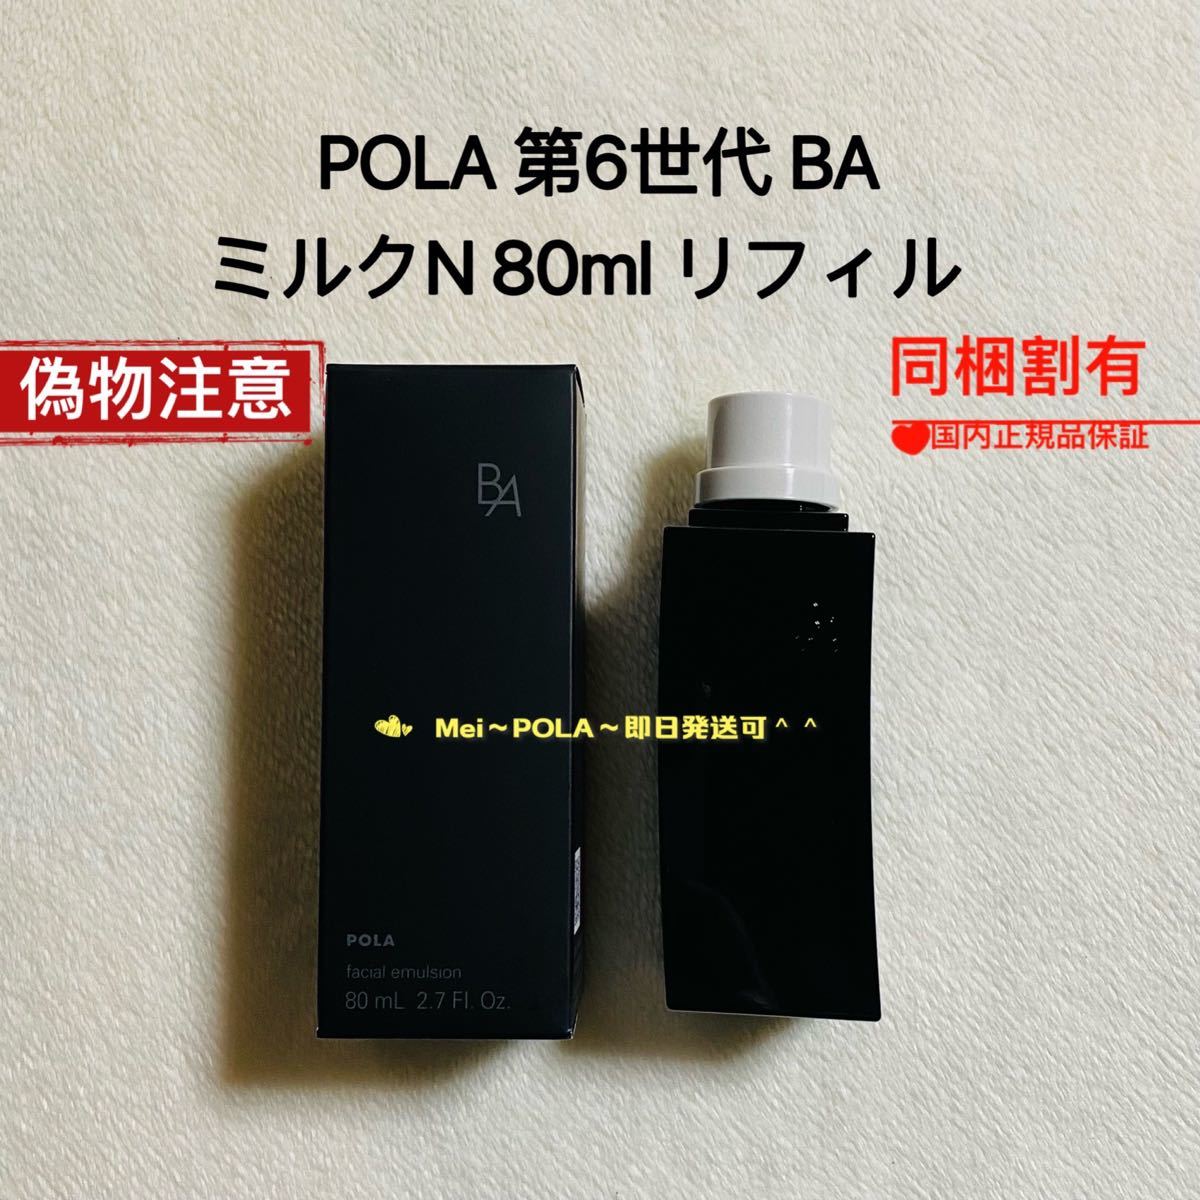 日本製格安 POLA BAミルク N リフィル 1本 80ml PVcQ4-m96577725790